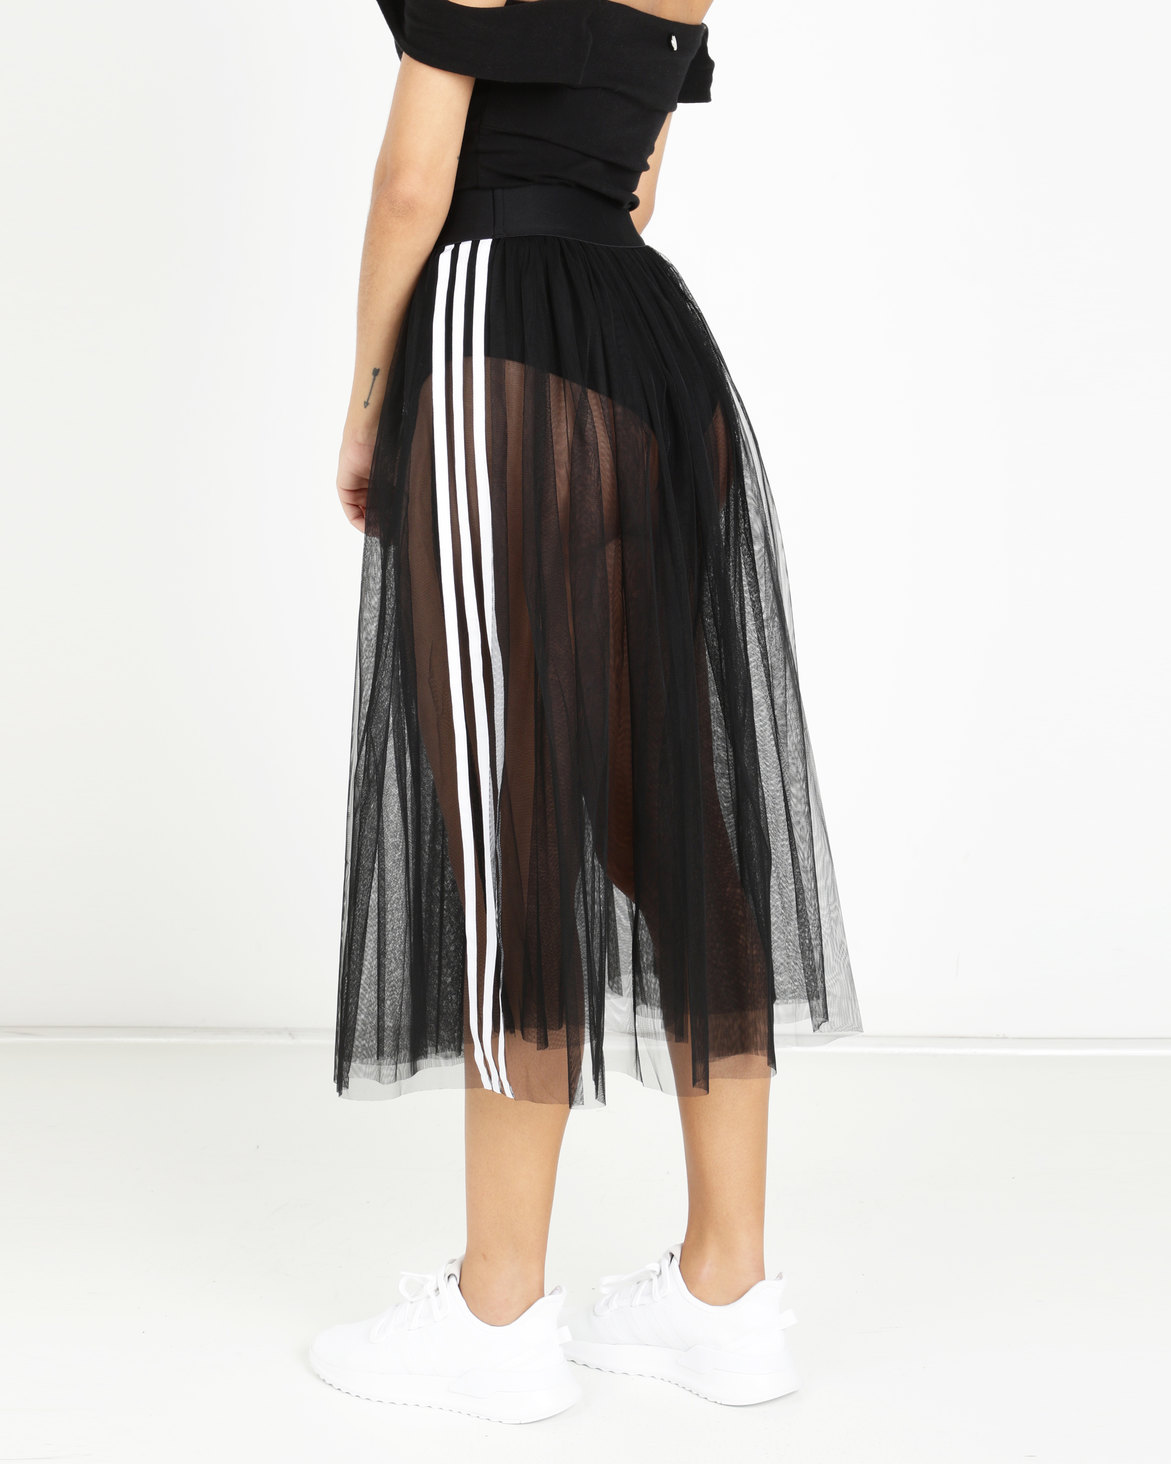 adidas Originals 3 Stripes Skirt Black | Zando